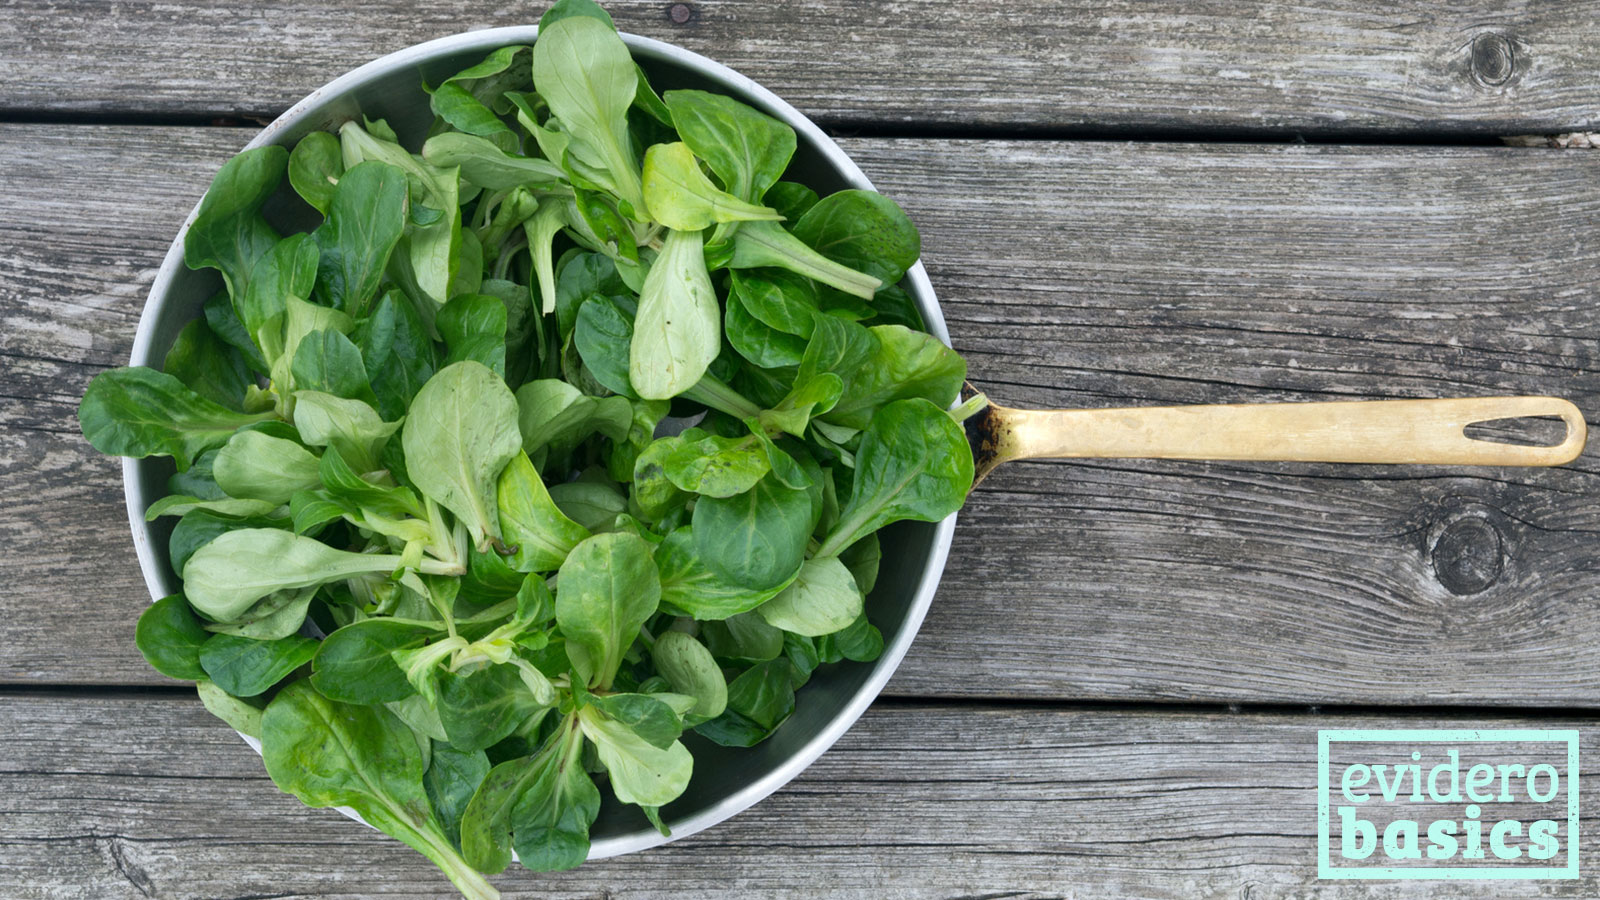 Feldsalat ist der Salat mit dem meisten Vitamin A und C | evidero